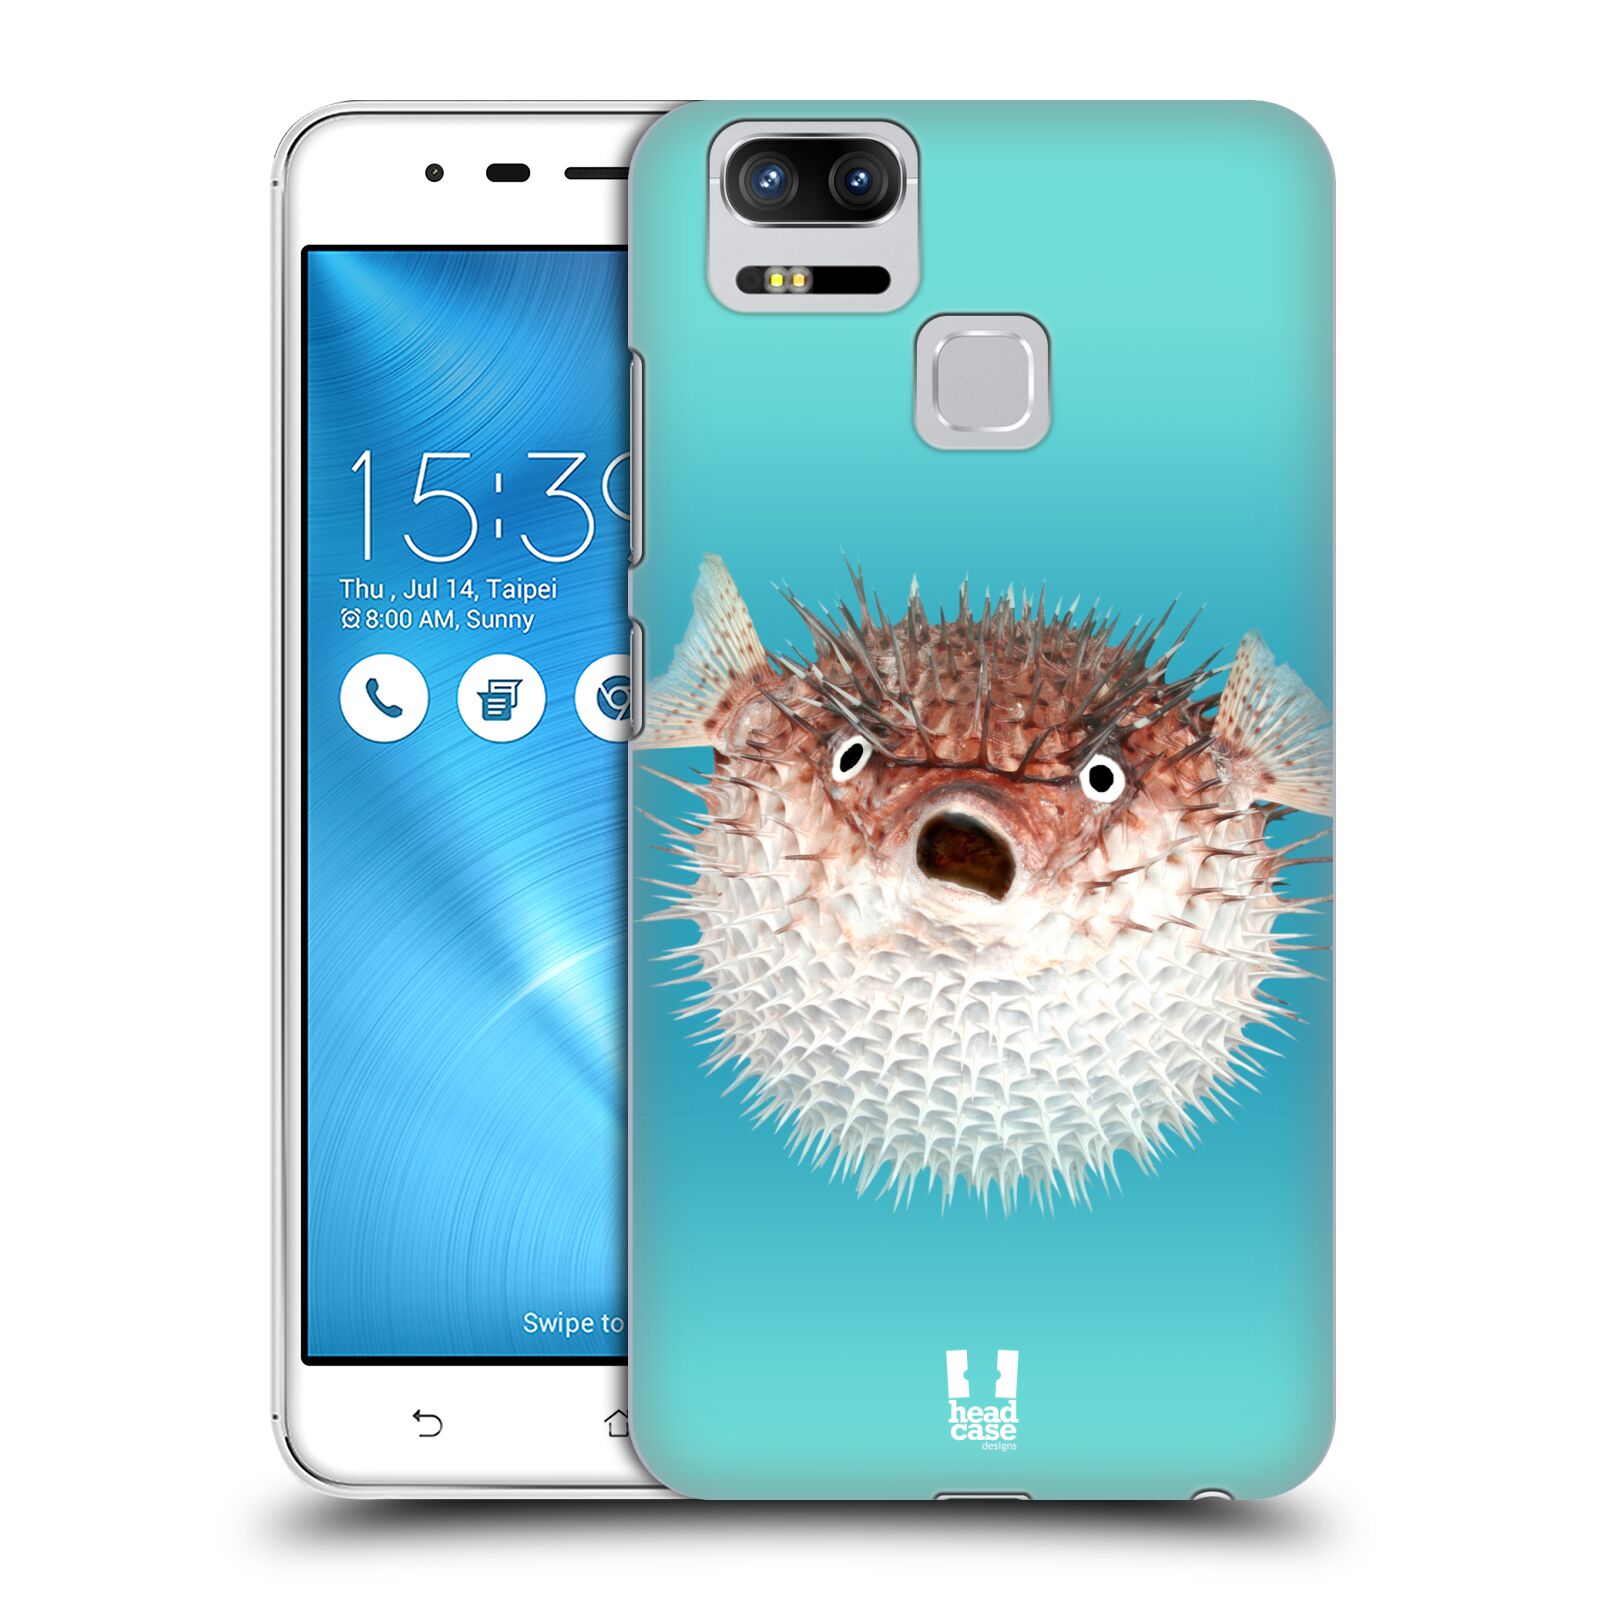 HEAD CASE plastový obal na mobil Asus Zenfone 3 Zoom ZE553KL vzor slavná zvířata foto ježík hnědý